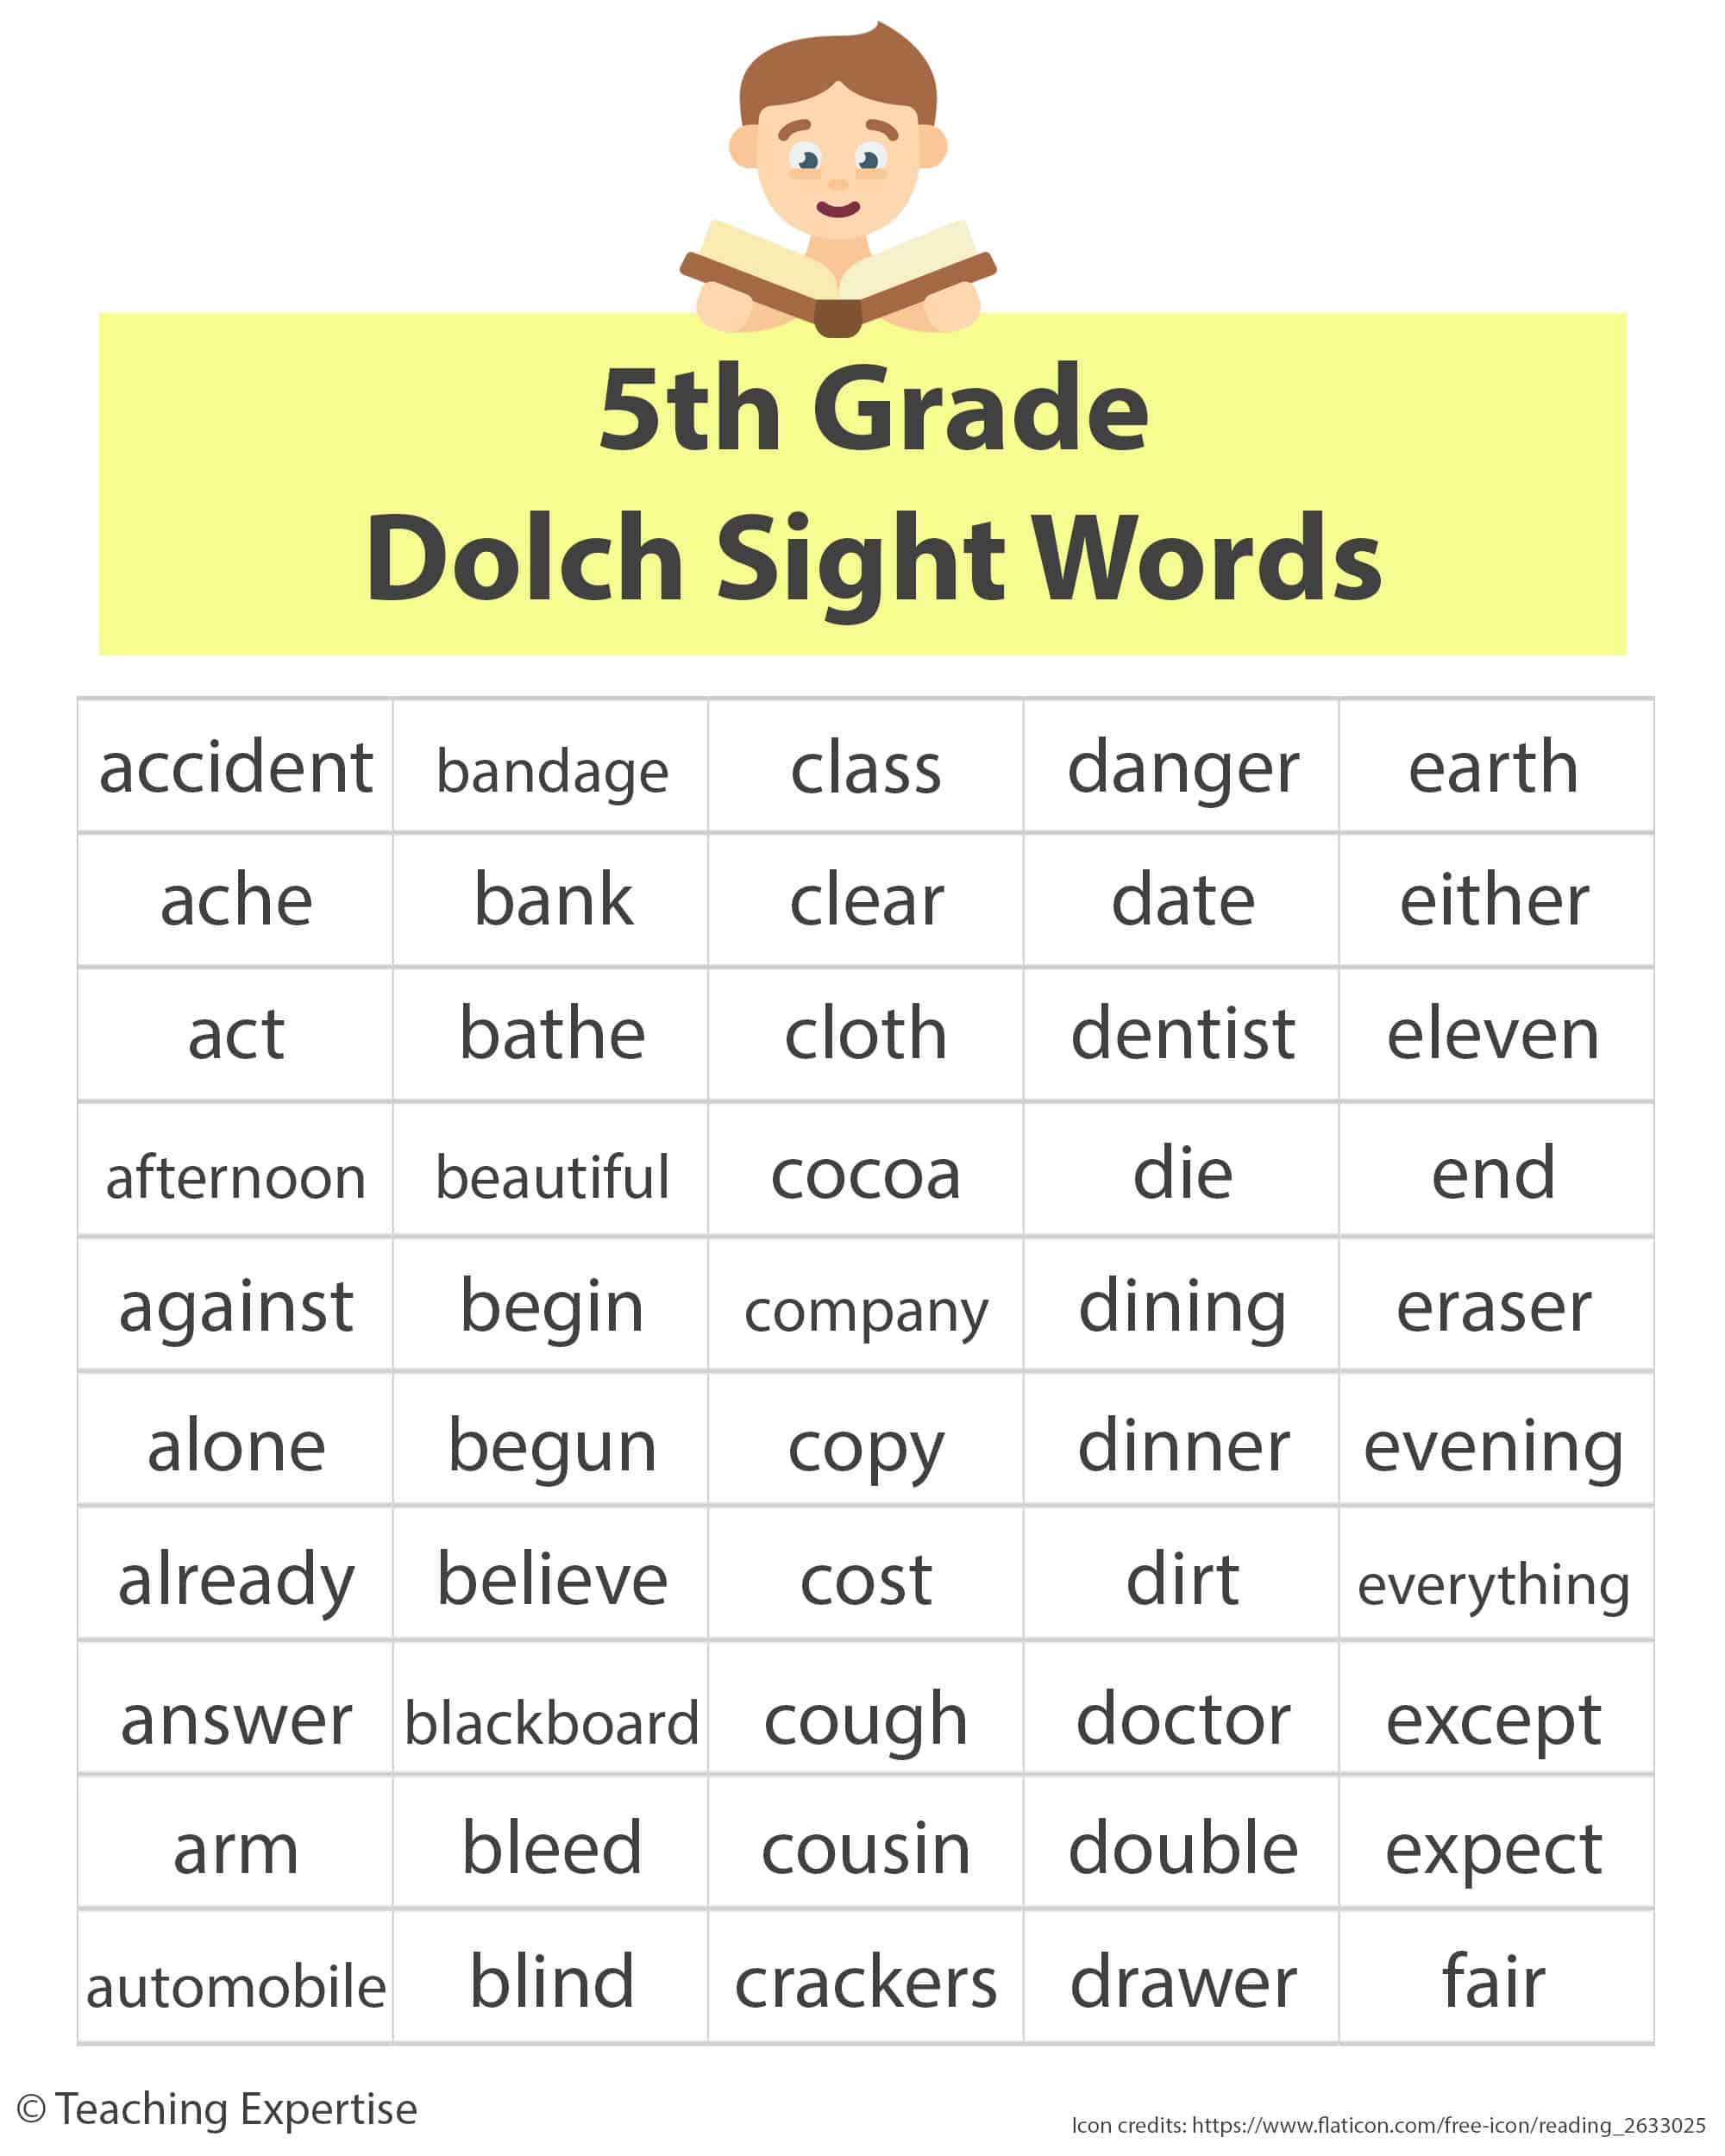  100 parole chiave per lettori fluenti di quinta elementare